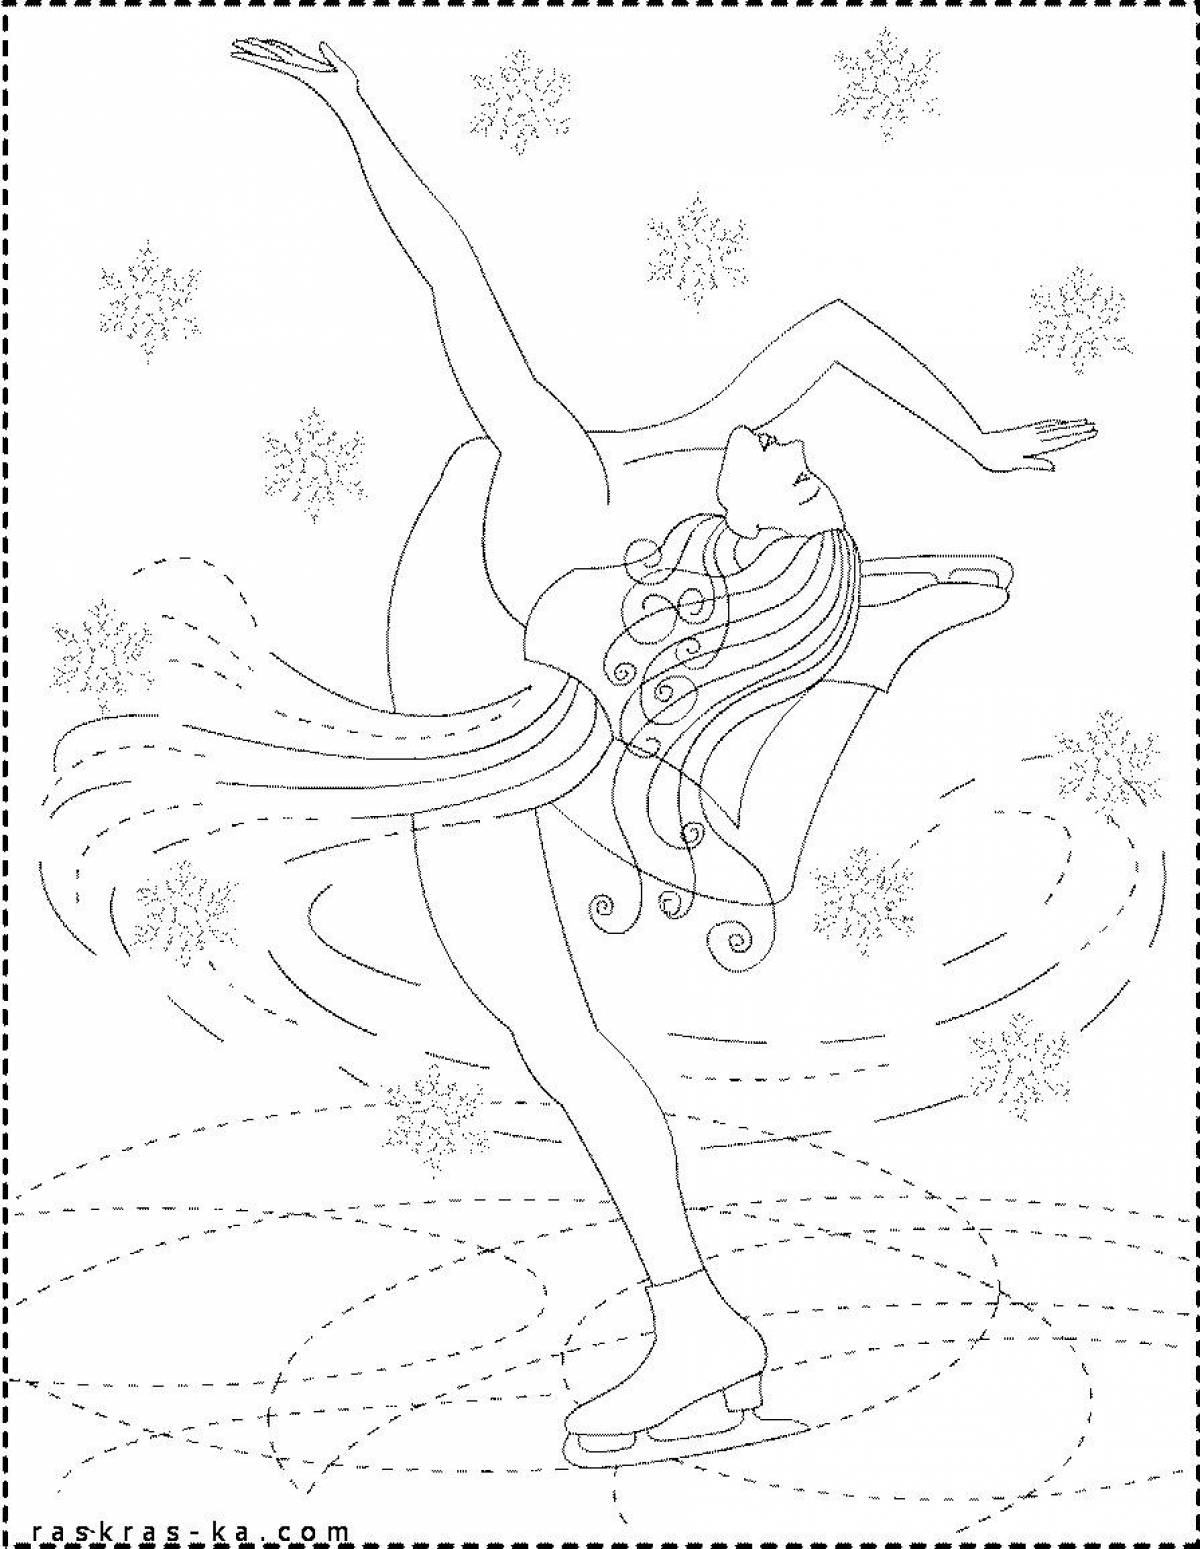 Fascinating figure skating coloring book